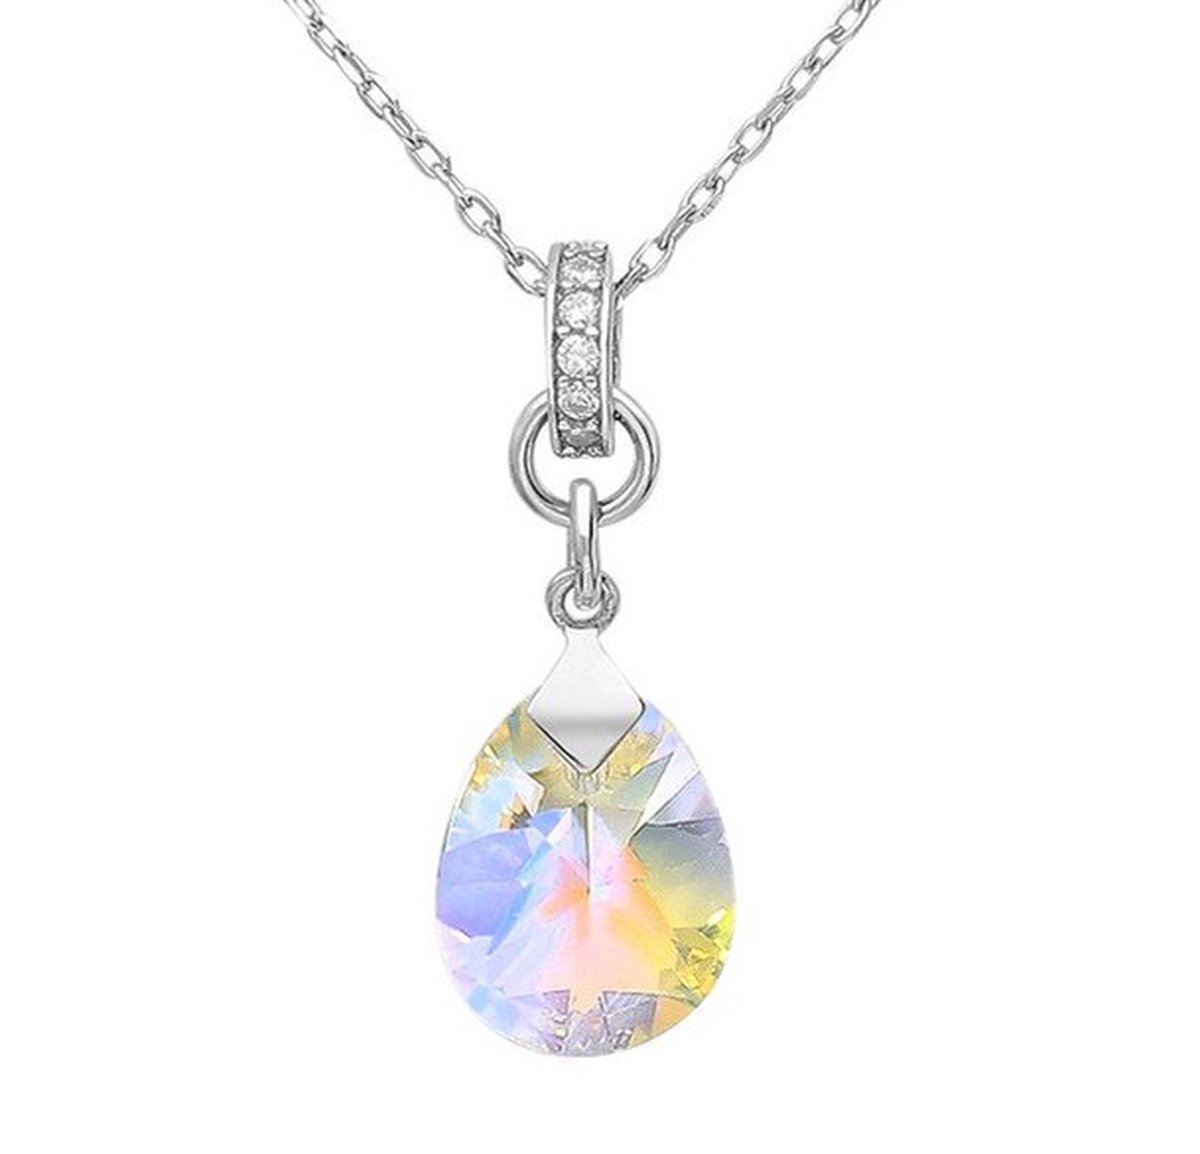 Halsketting Drop zilver 925 met hoogwaardige kristallen - Premio crystals - Met zirkonia kristallen ring - Geschenkverpakking van Sophie Siero - Zilverkleurige ketting